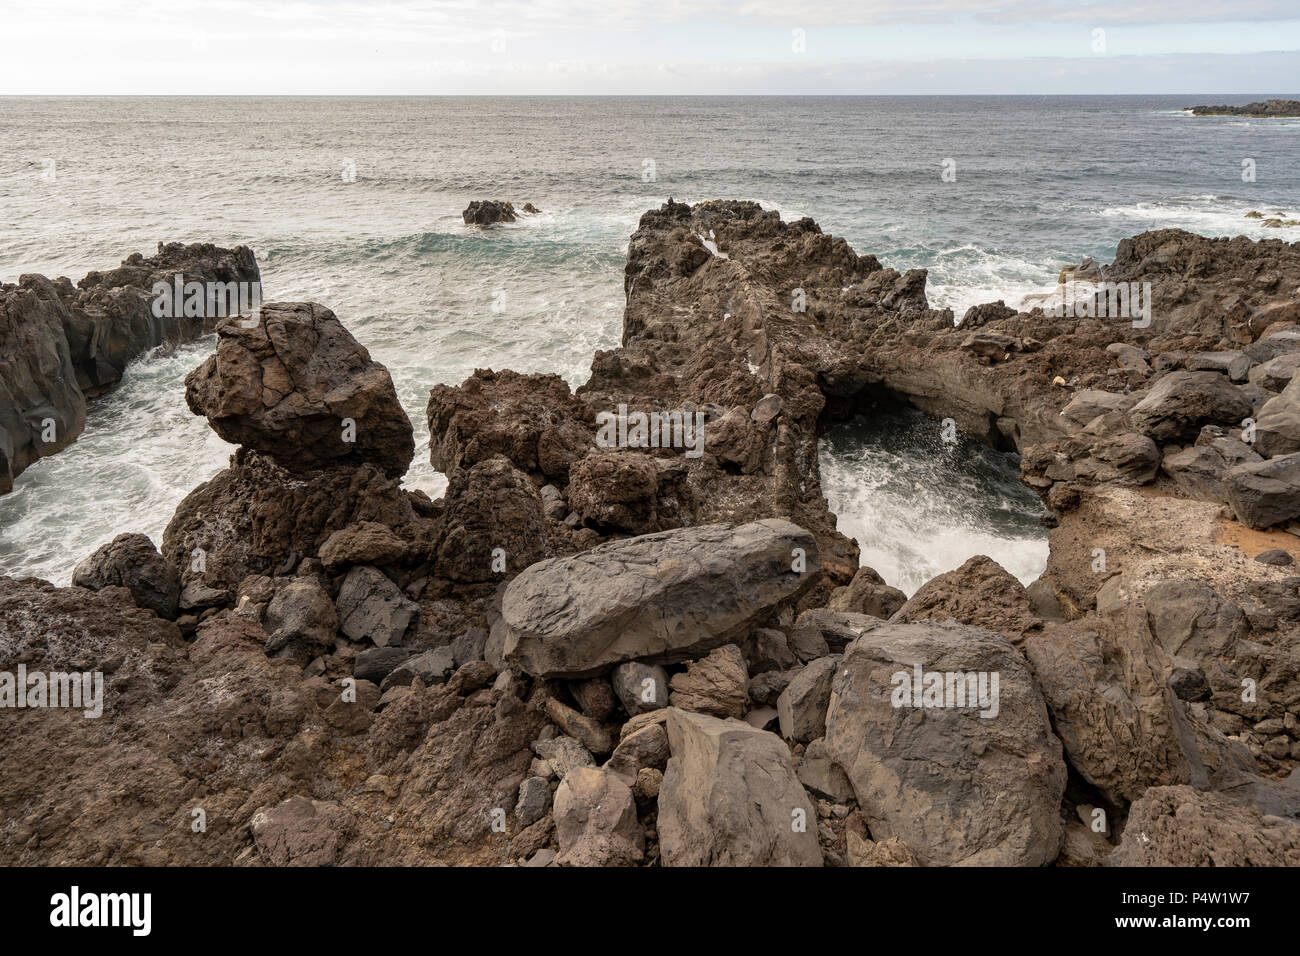 Viste della Playa de los Barqueros nella parte nord di Tenerife, a Buenavista del Norte e le sue rocce vulcaniche formazione lungo il mare. Foto Stock